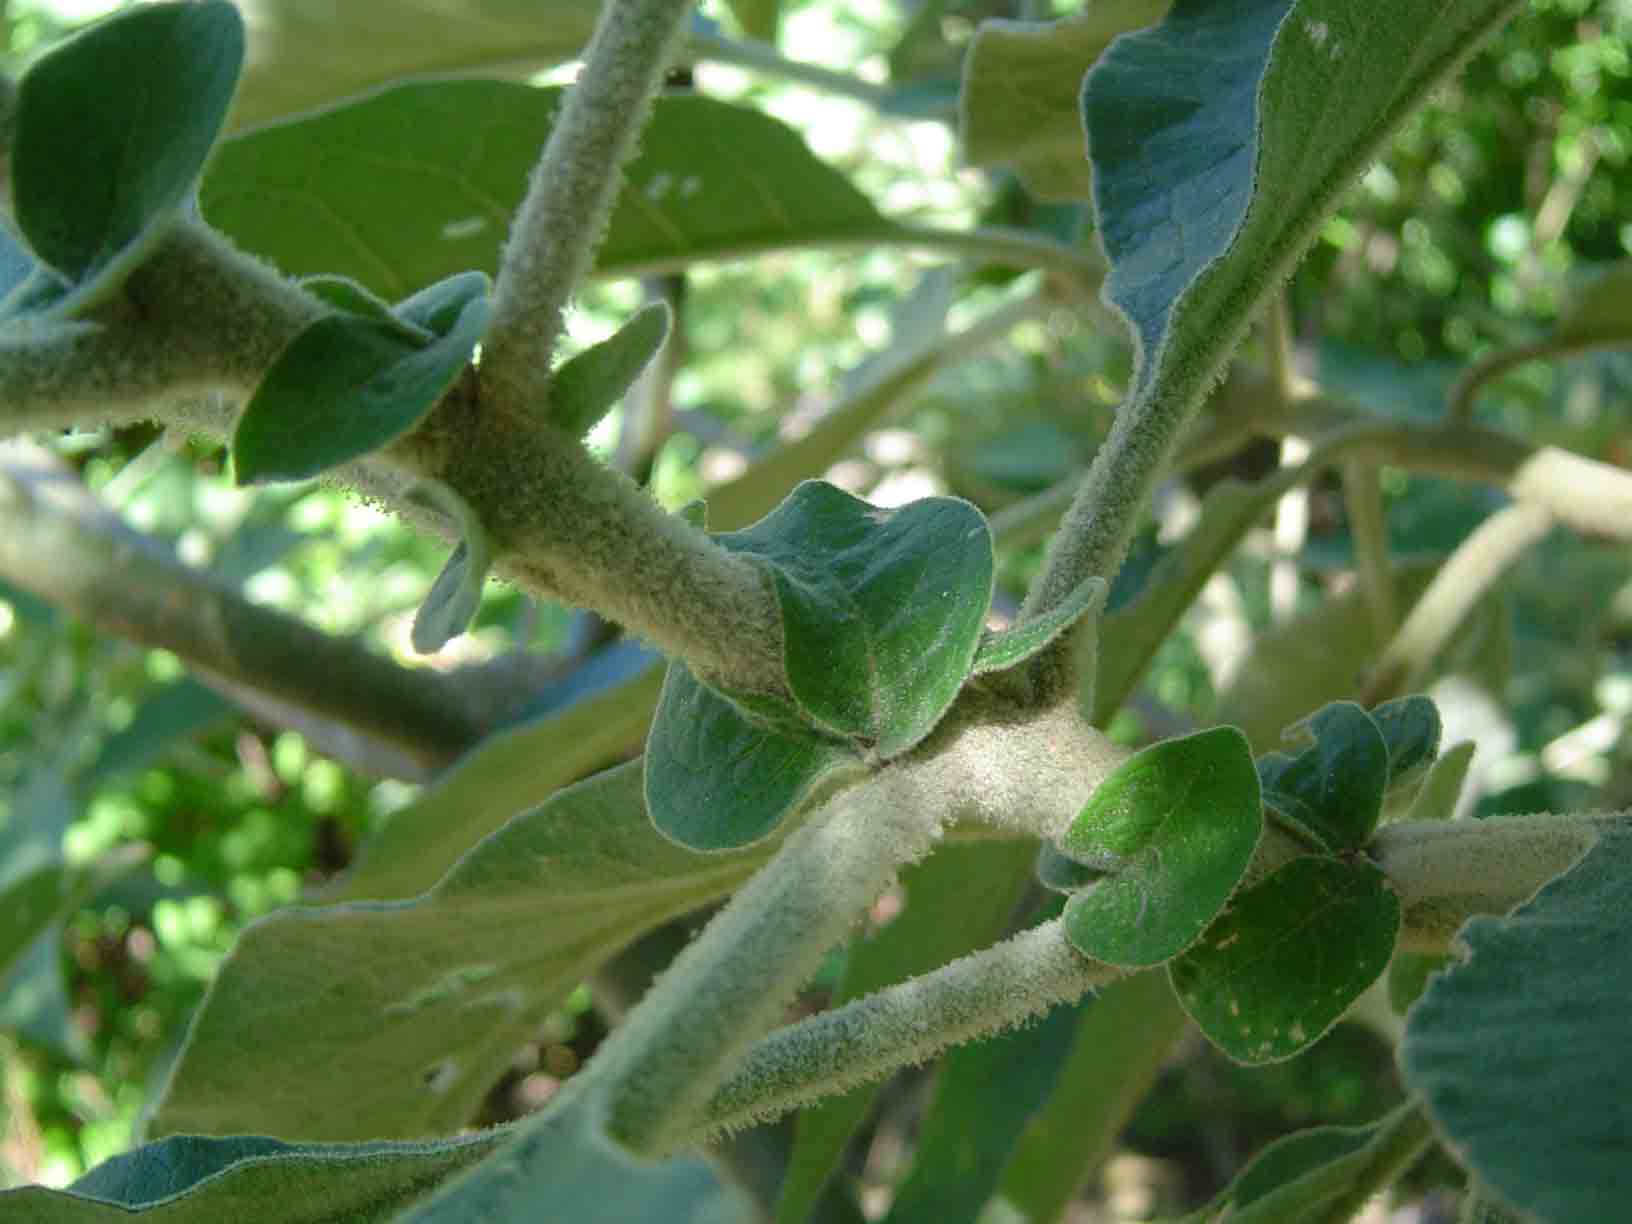 Solanum mauritianum